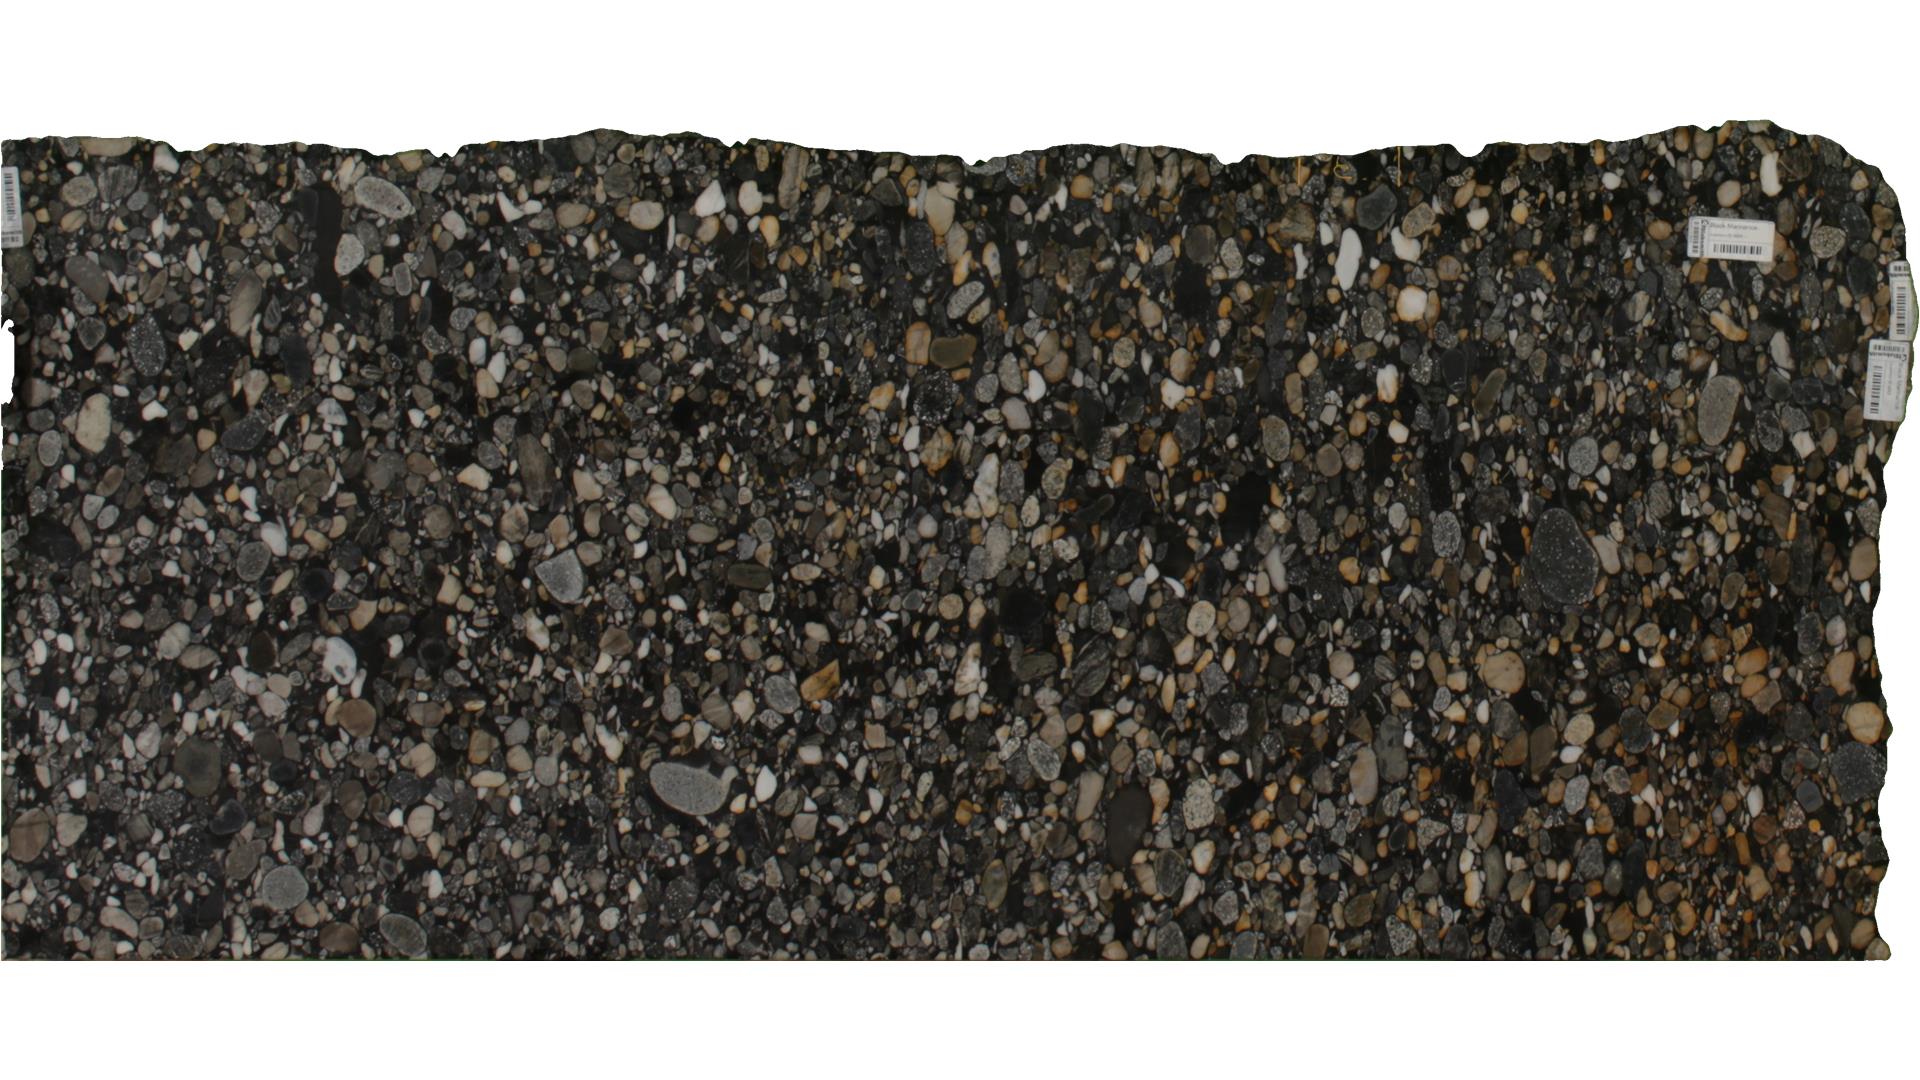 Black Marinance Granite Slabs